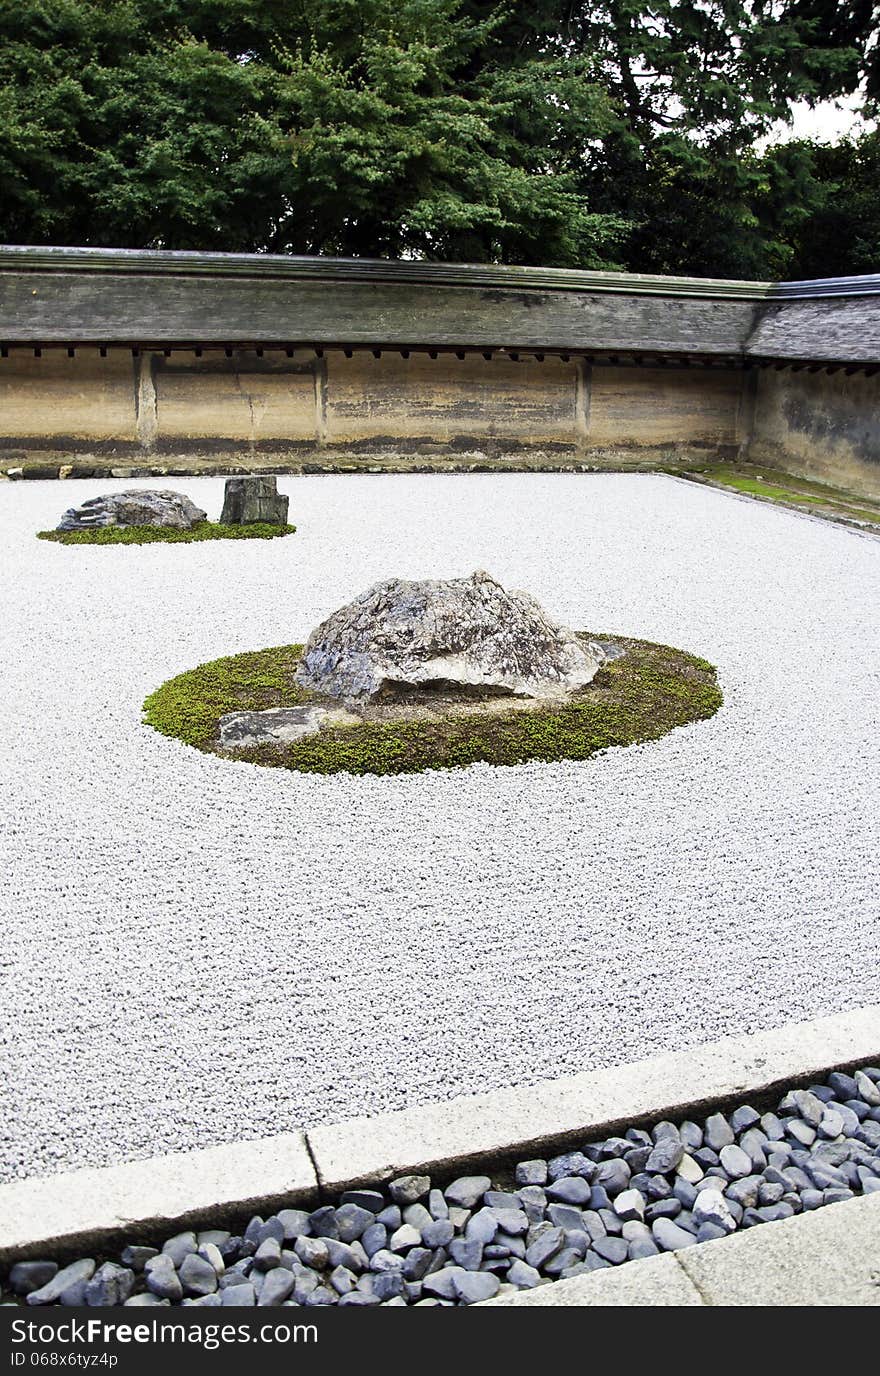 Rock garden (also called a Zen Garden) at the Ryoan-ji temple in Kyoto, Japan. Rock garden (also called a Zen Garden) at the Ryoan-ji temple in Kyoto, Japan.